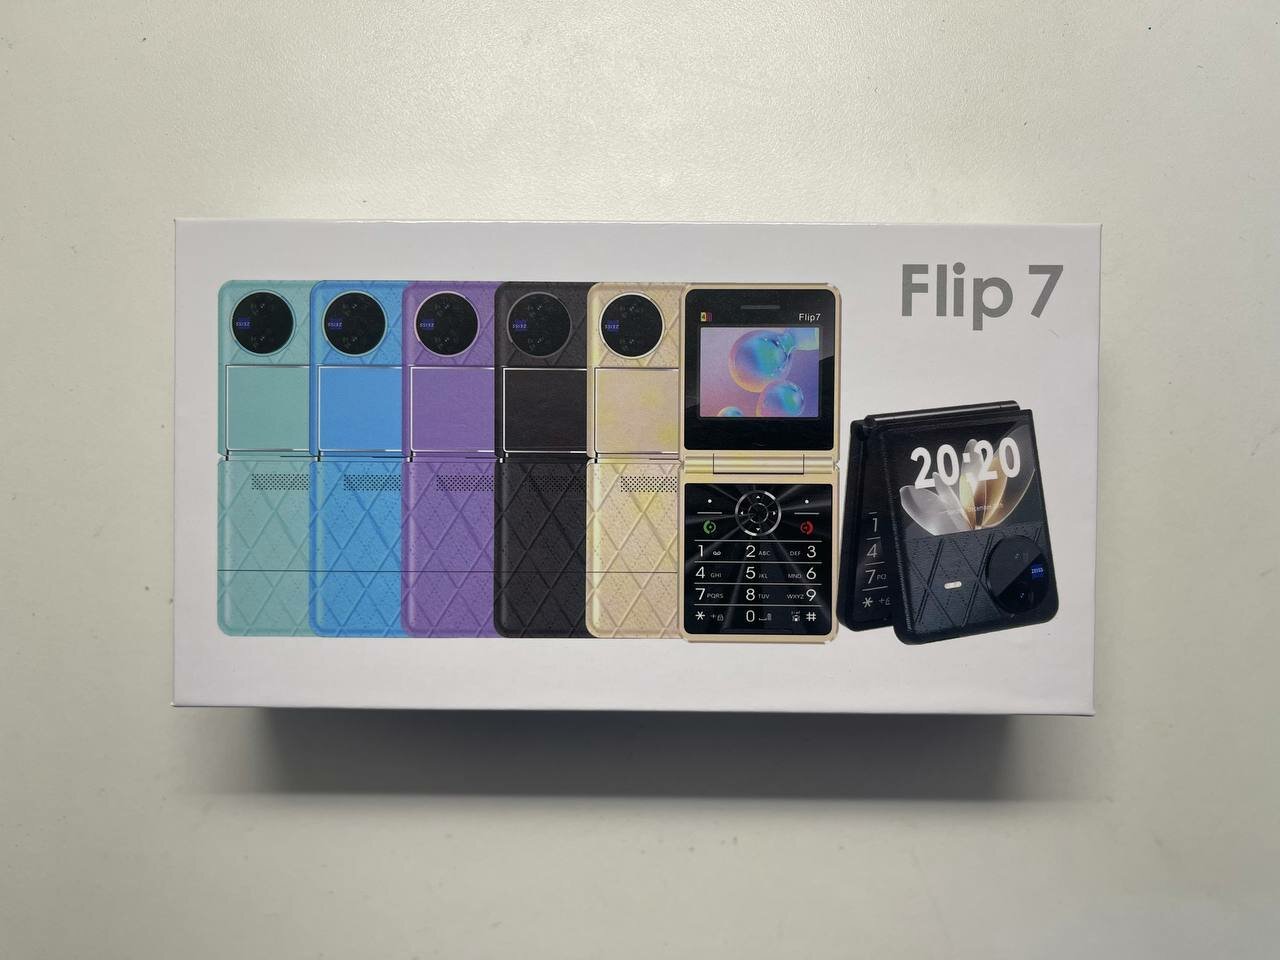 Кнопочная раскладушка FLIP 7, 4 nano sim, 3000mAh, фиолетовый